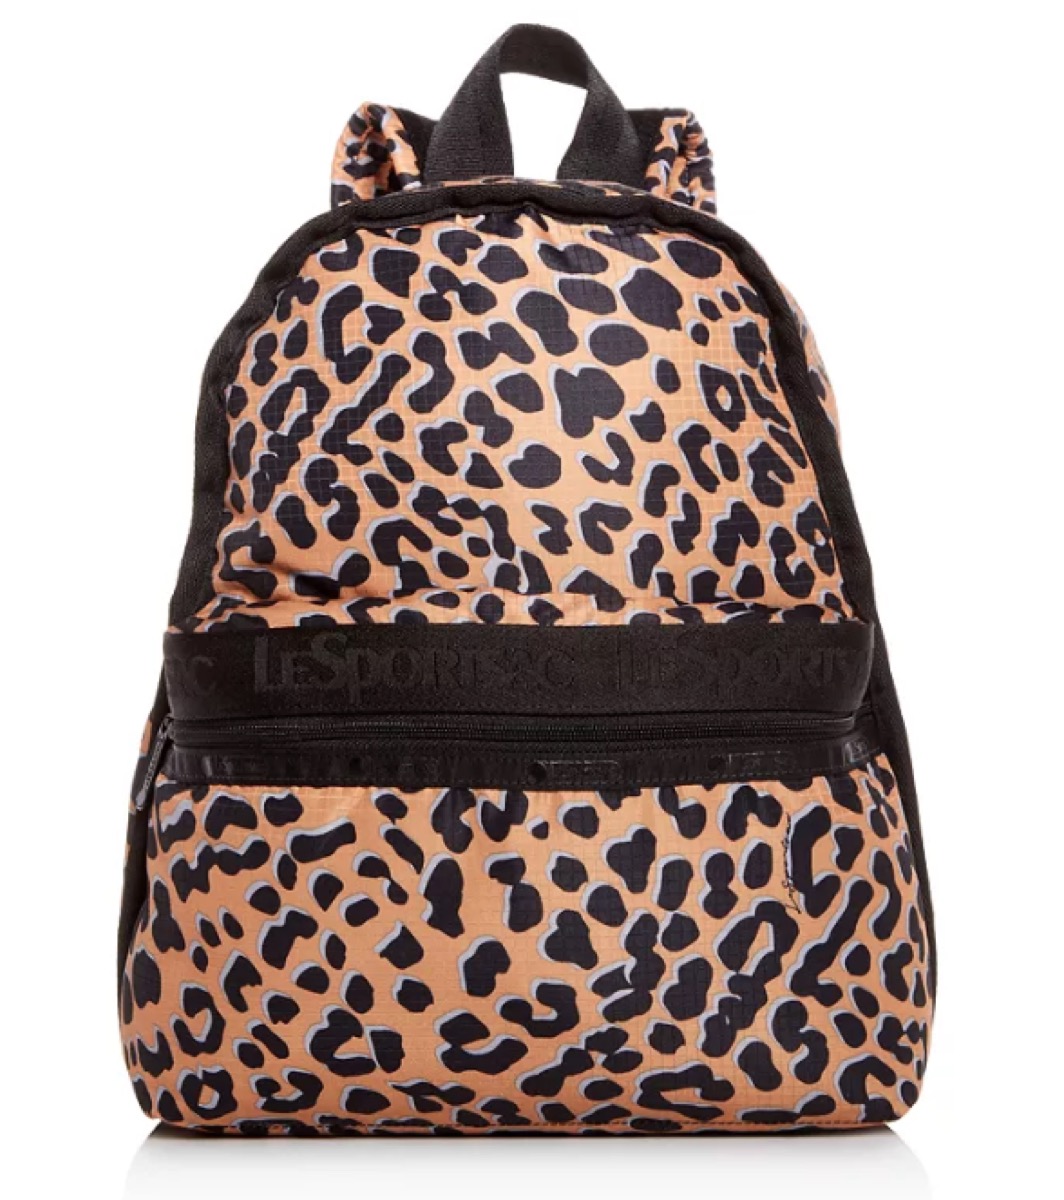 lesportsac cheetah print backpack - best college backpacks